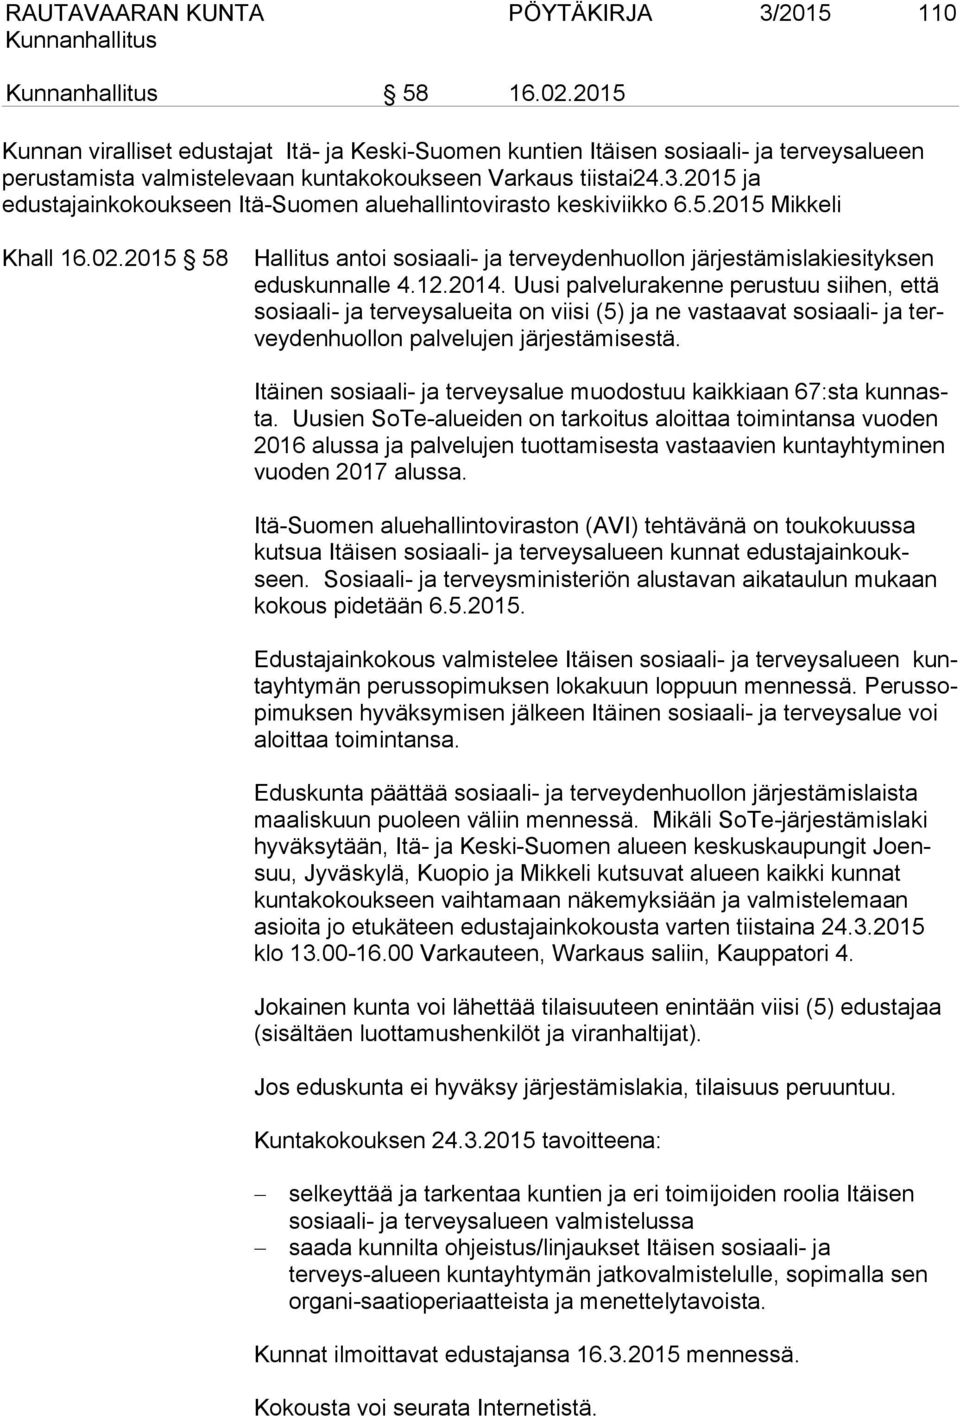 2015 ja edustajainkokoukseen Itä-Suomen aluehallintovirasto keskiviikko 6.5.2015 Mikkeli Khall 16.02.2015 58 Hallitus antoi sosiaali- ja terveydenhuollon järjestämislakiesityksen eduskunnalle 4.12.